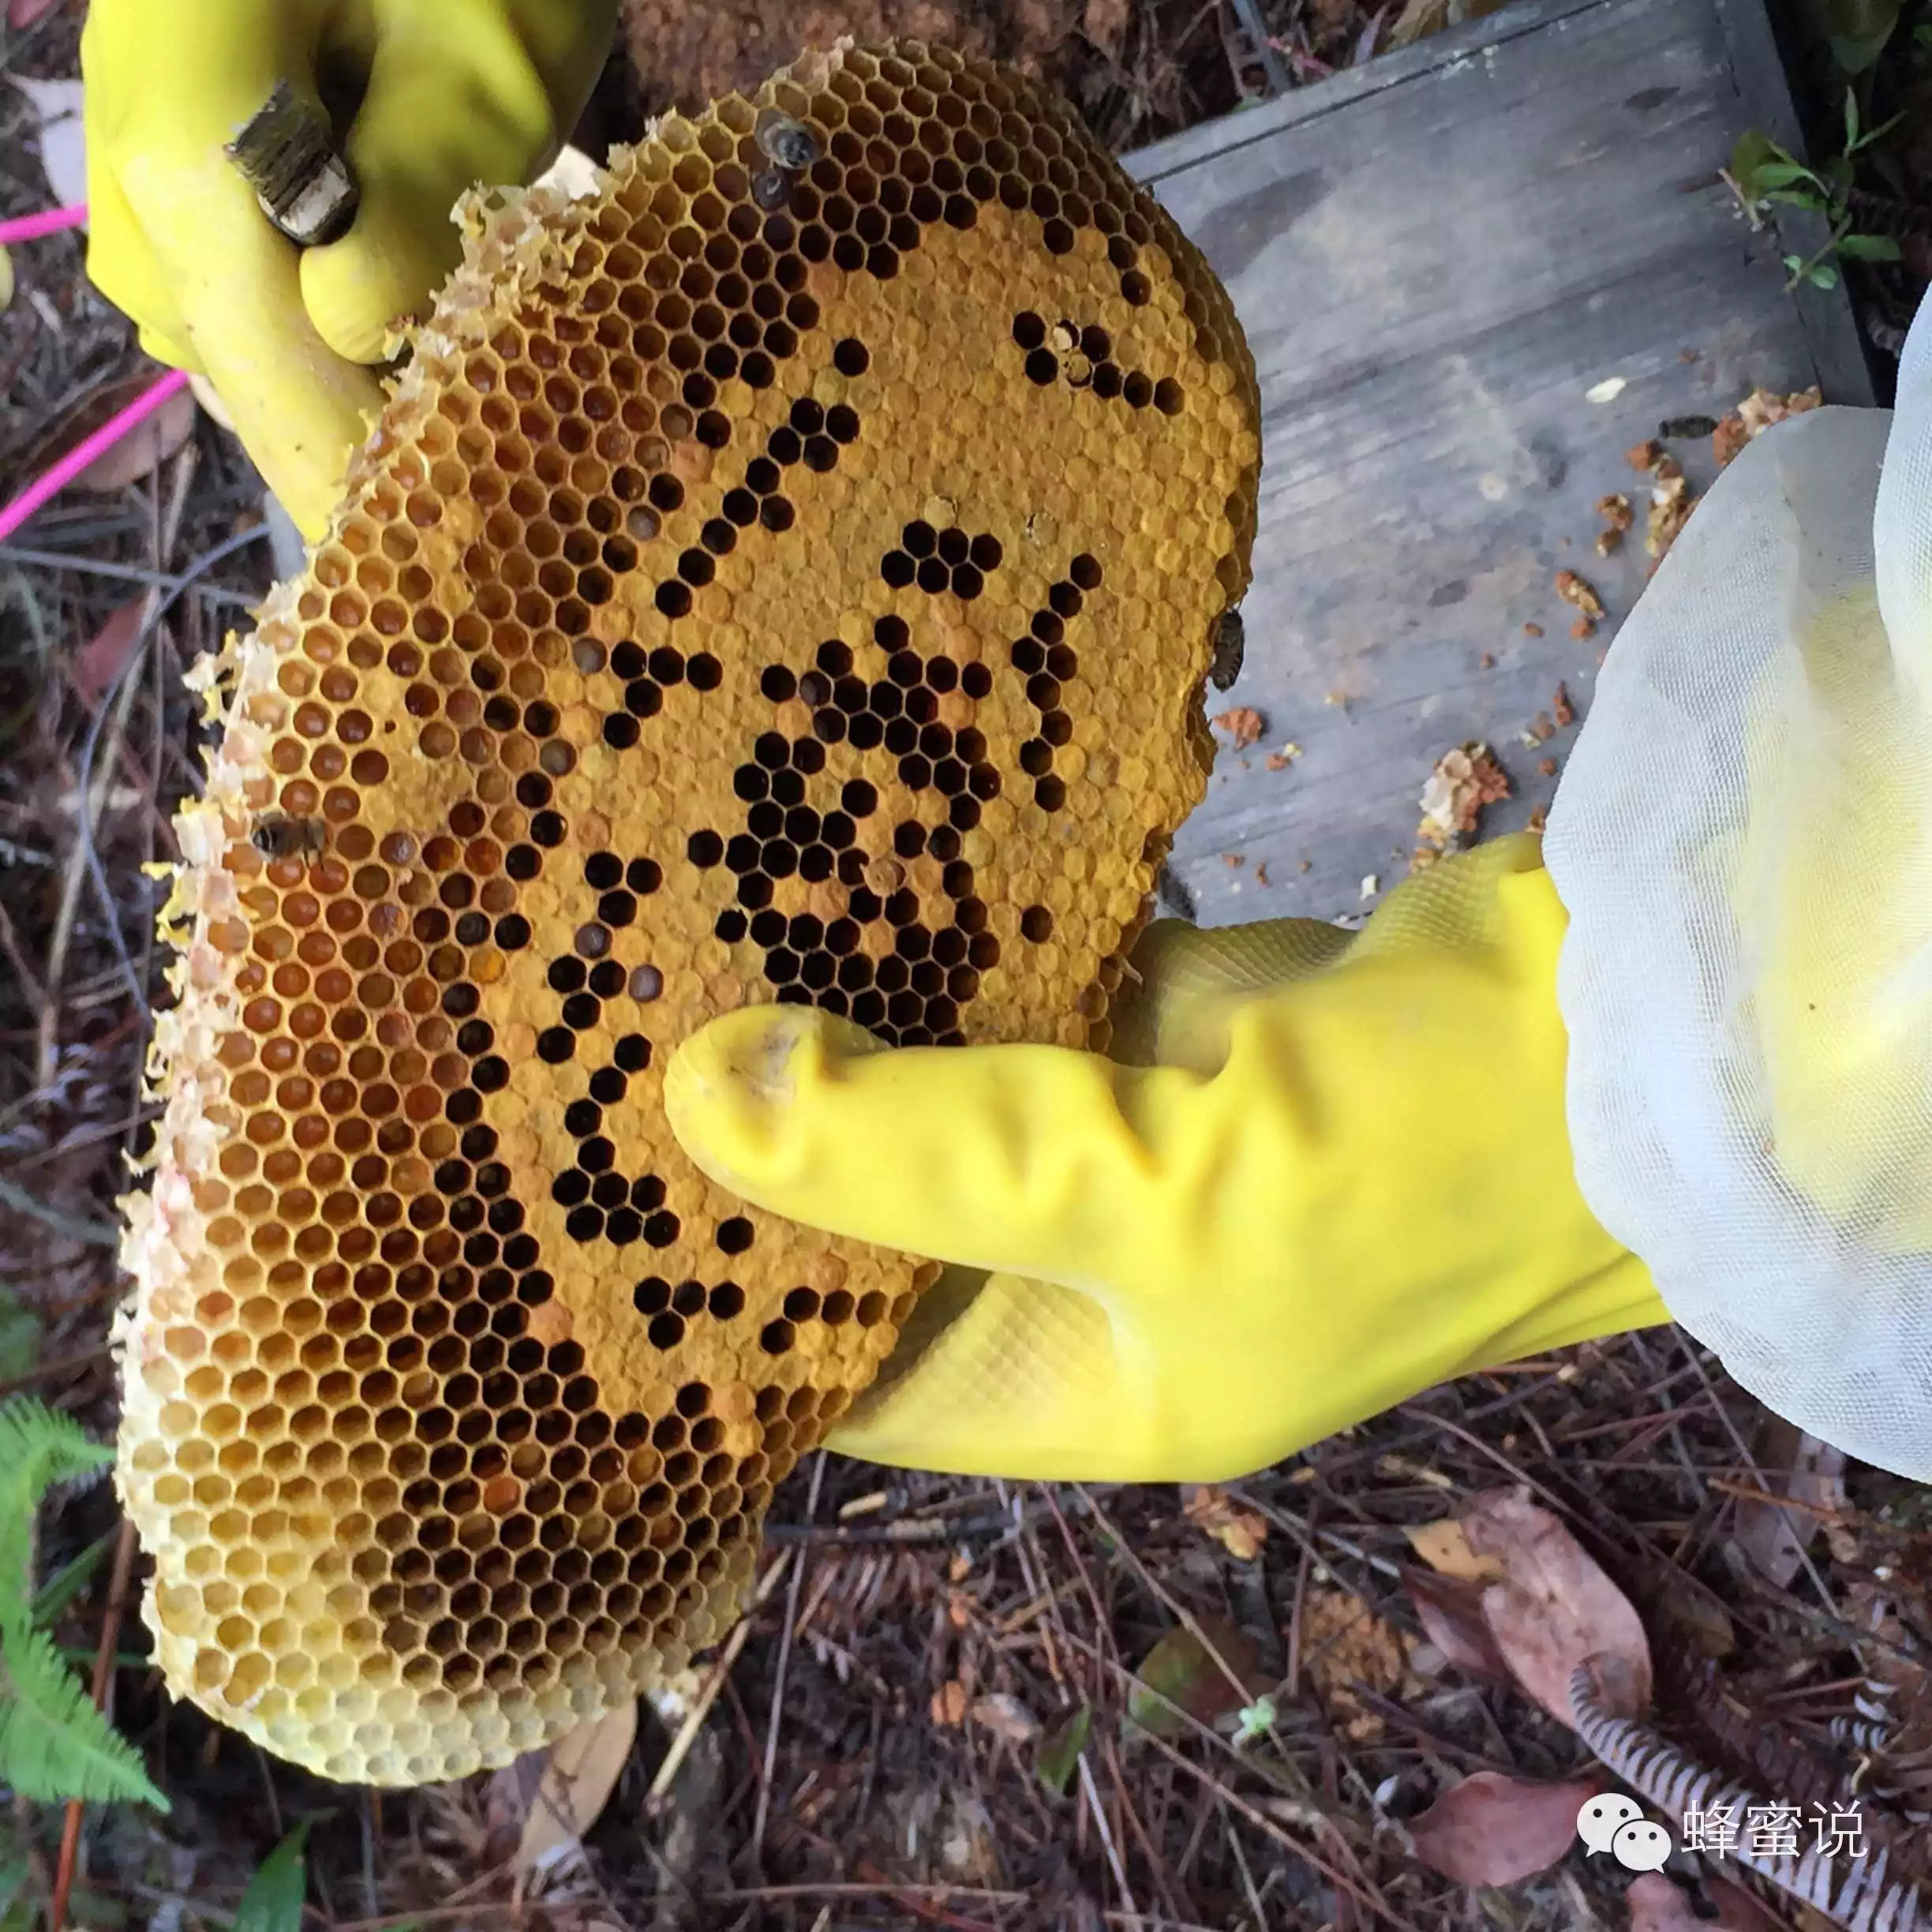 哪里能买到正宗蜂蜜 蜂蜜 品牌 生姜蜂蜜 蜂蜜面膜怎么做最美白 蜂蜜柠檬水